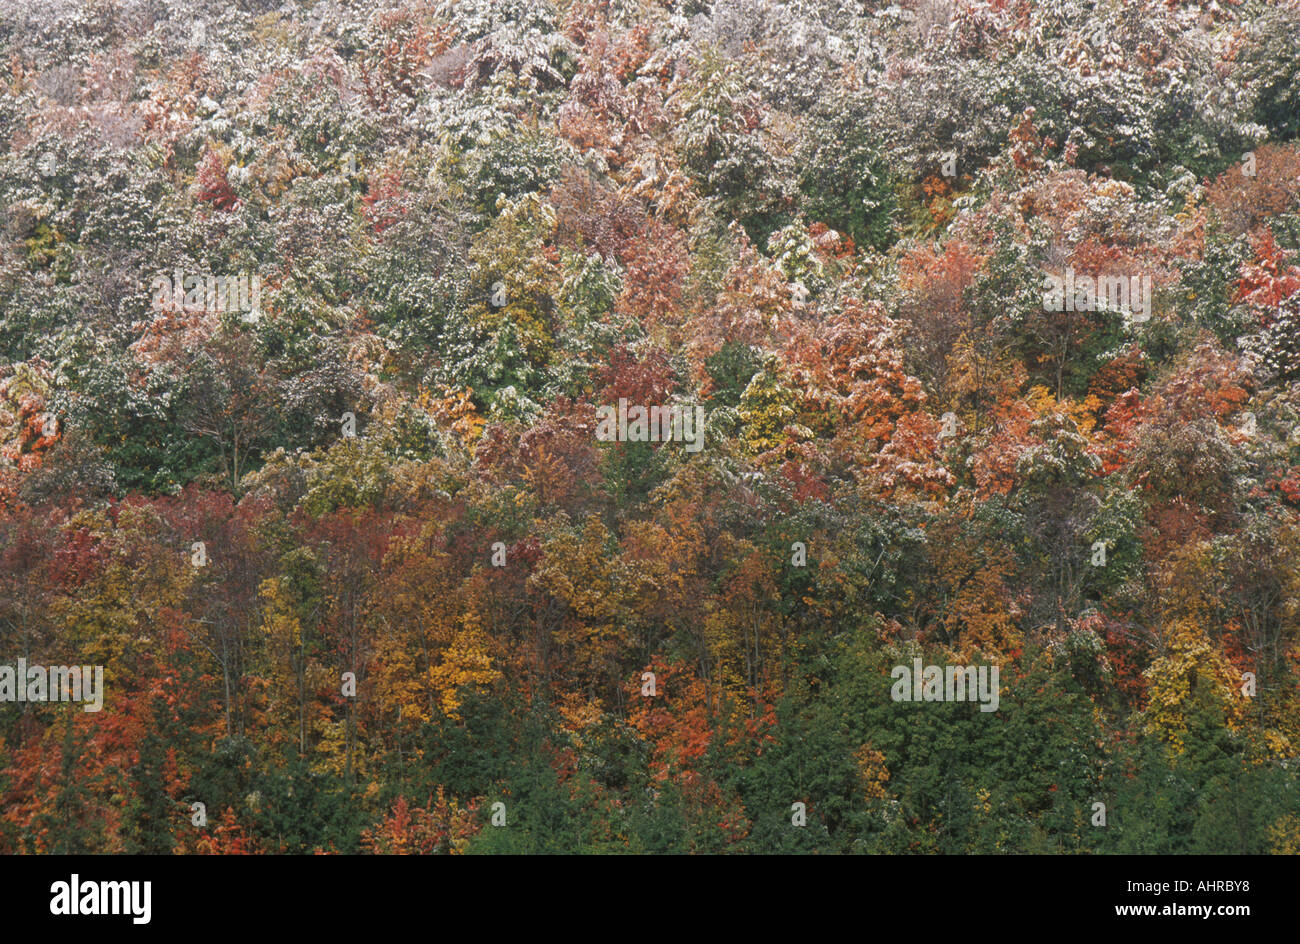 Snow on Autumn Trees Allegheny Mountains Stock Photo